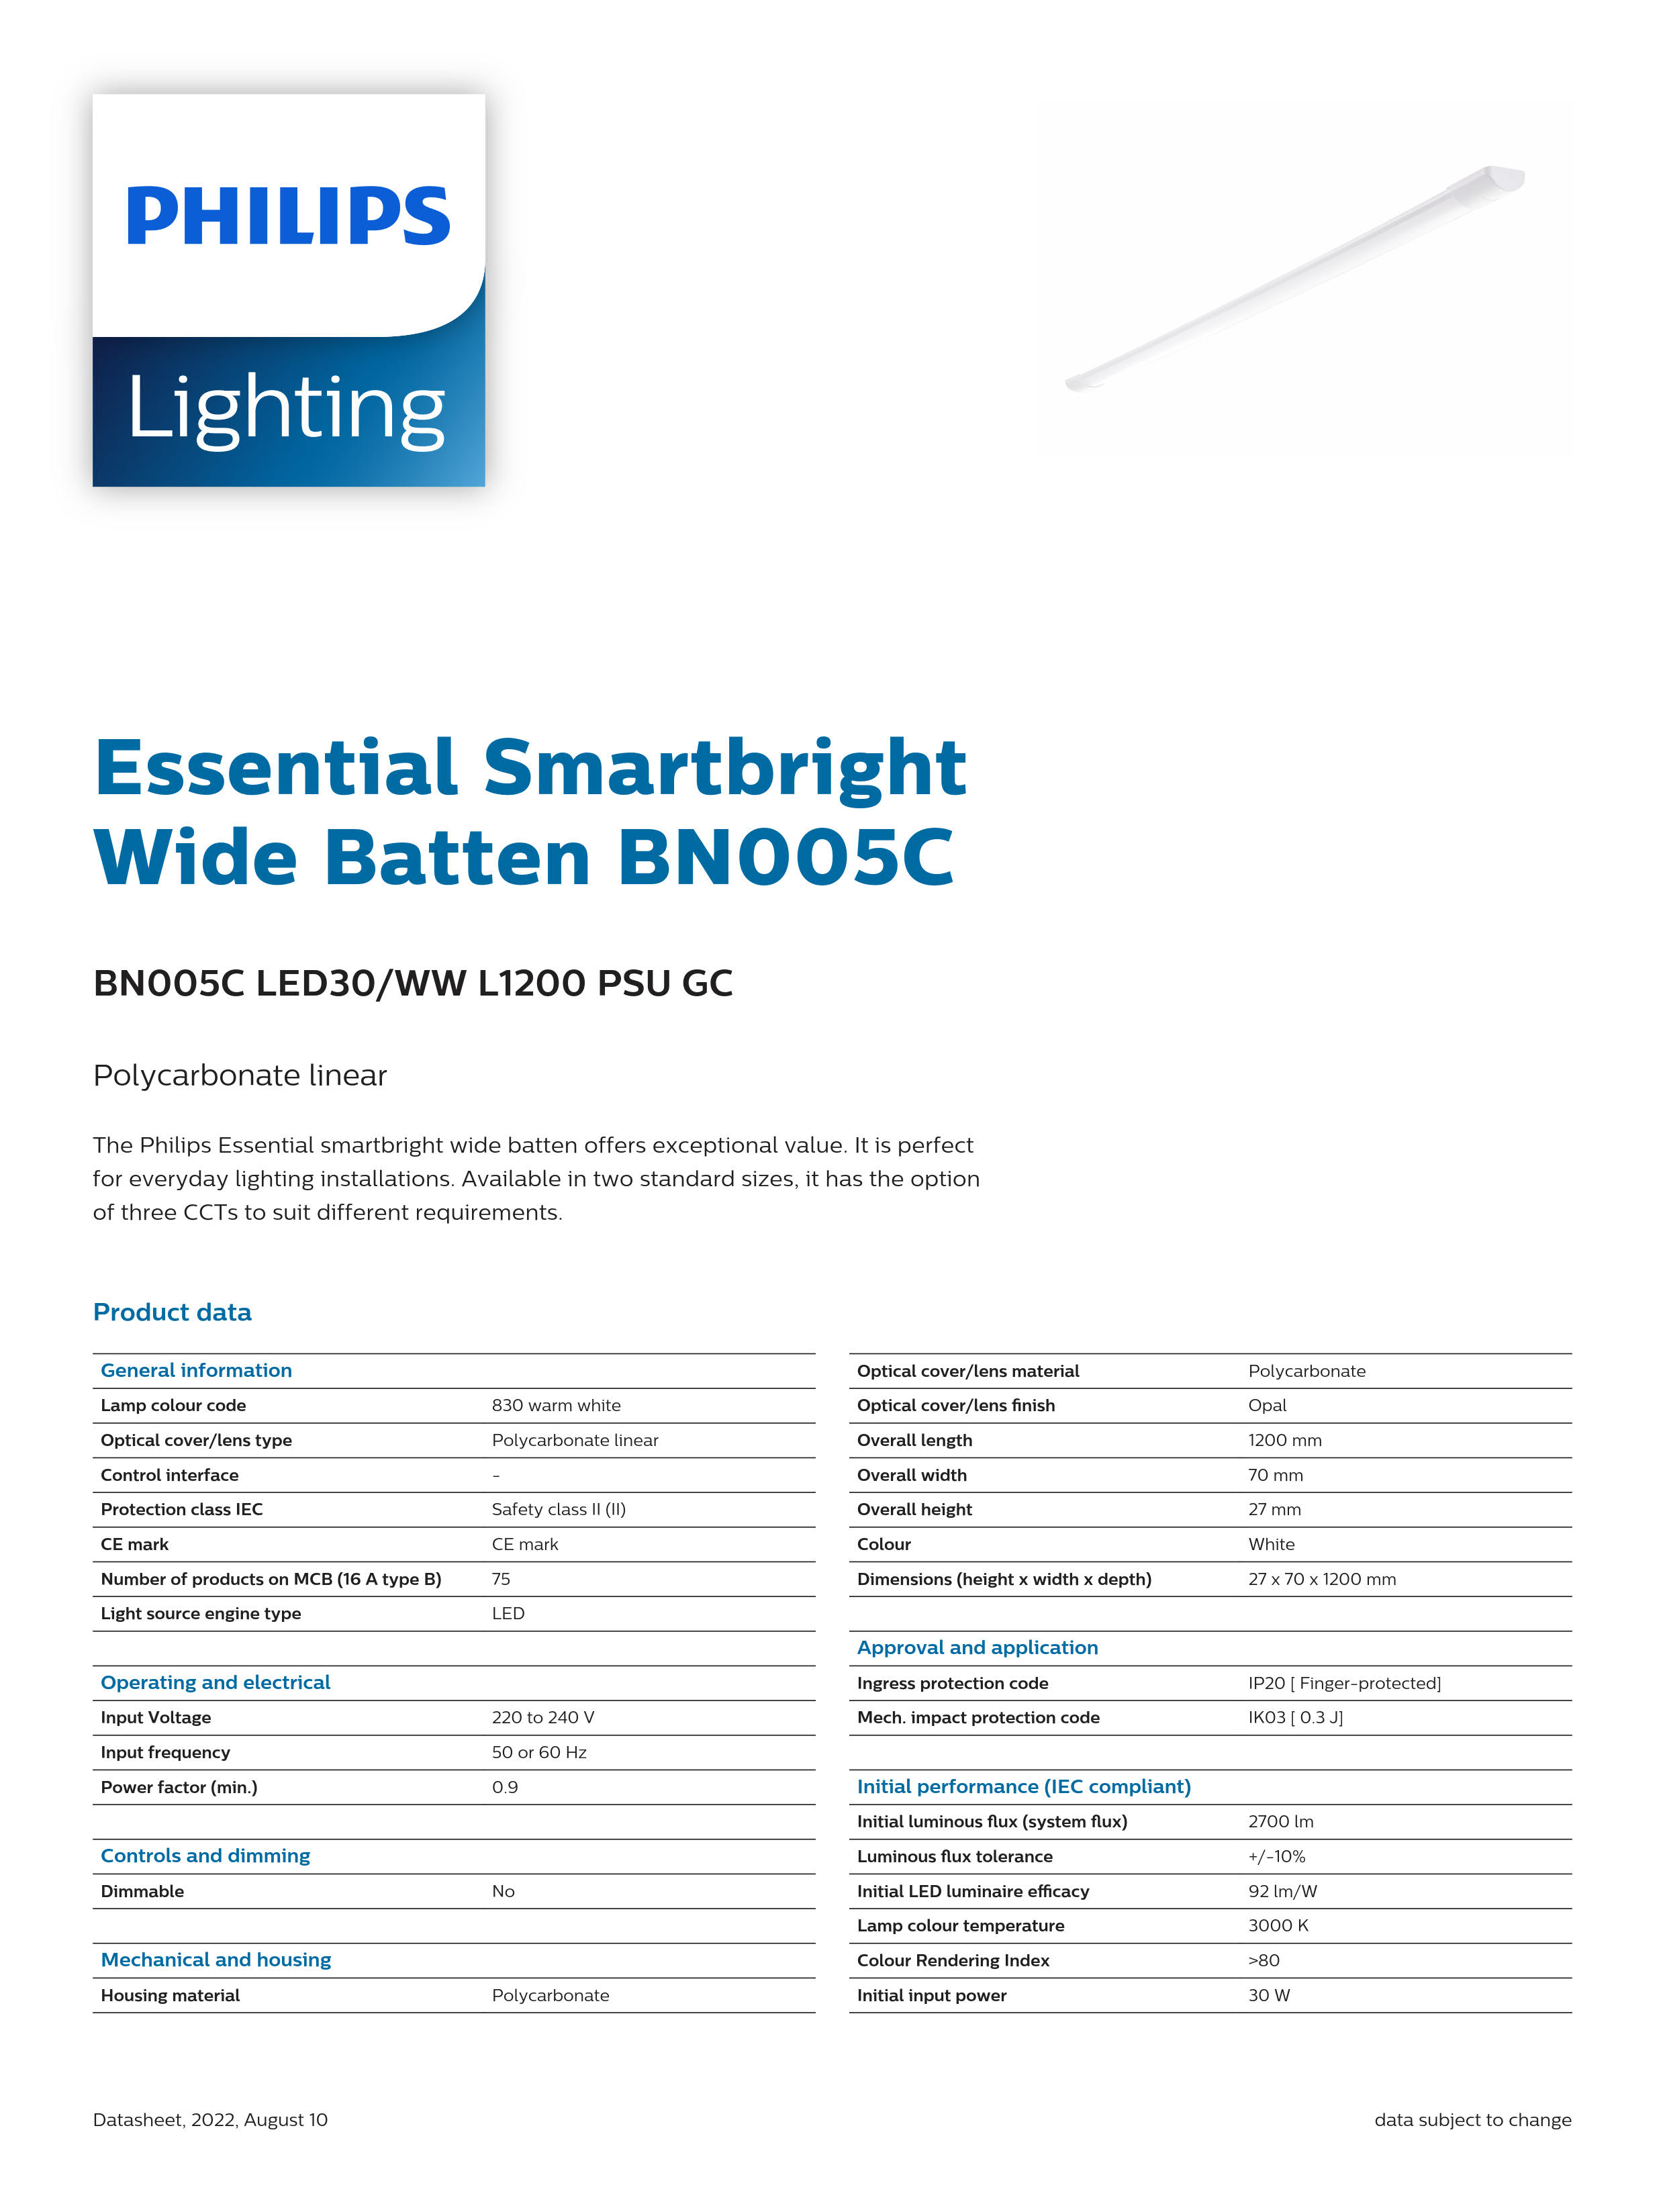 PHILIPS LED Batten Light Batten BN005C LED30/WW L1200 PSU GC 911401826681